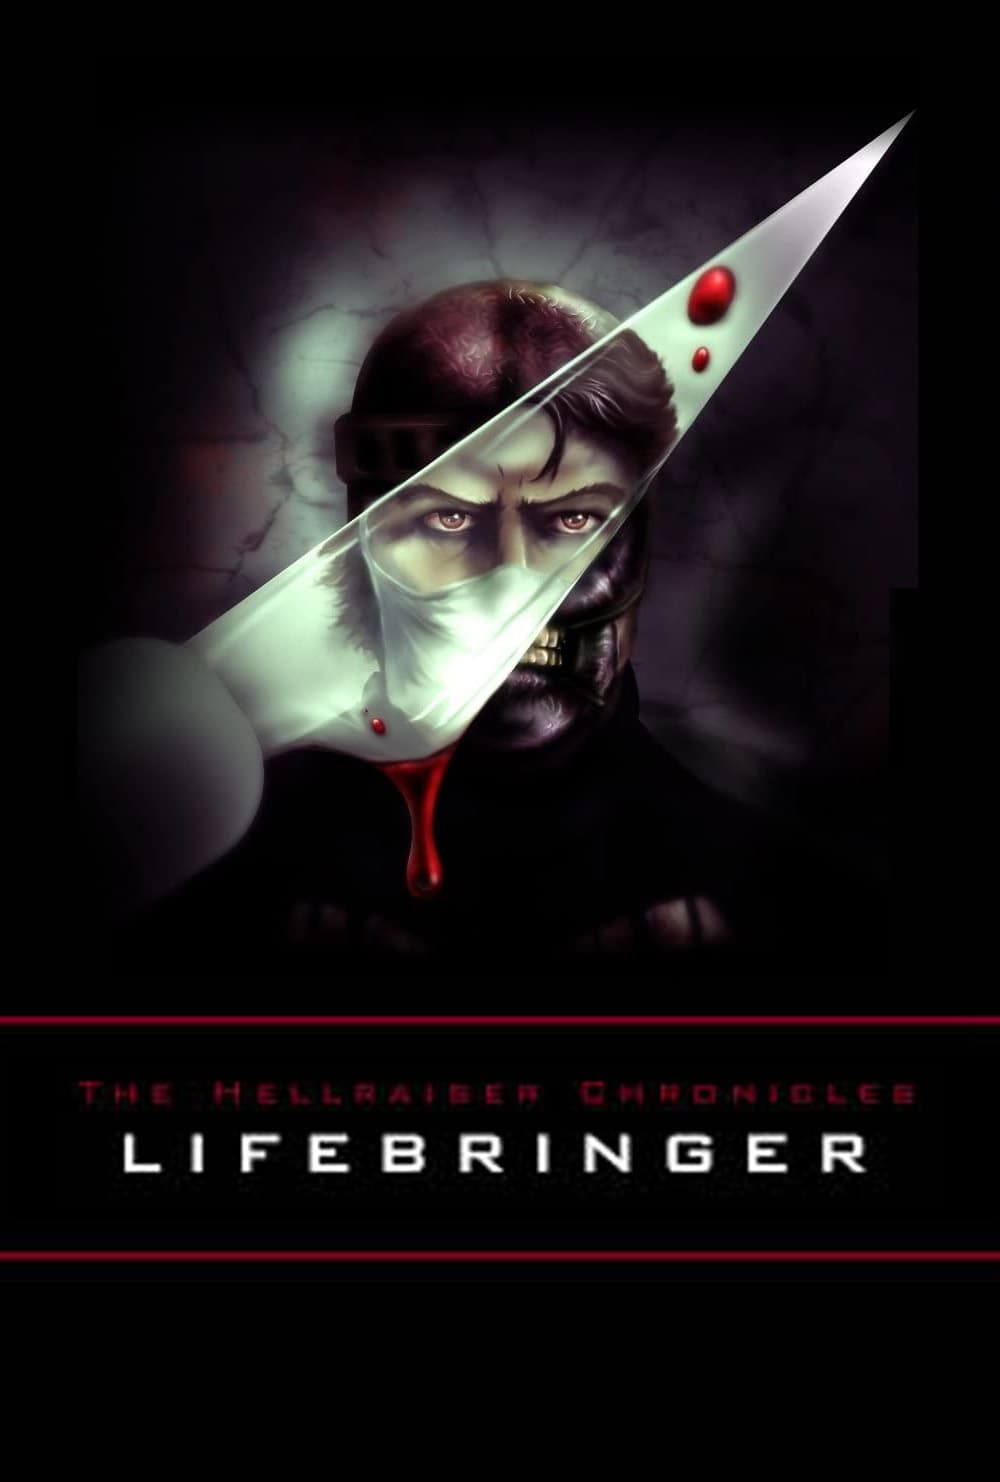 The Hellraiser Chronicles: Lifebringer